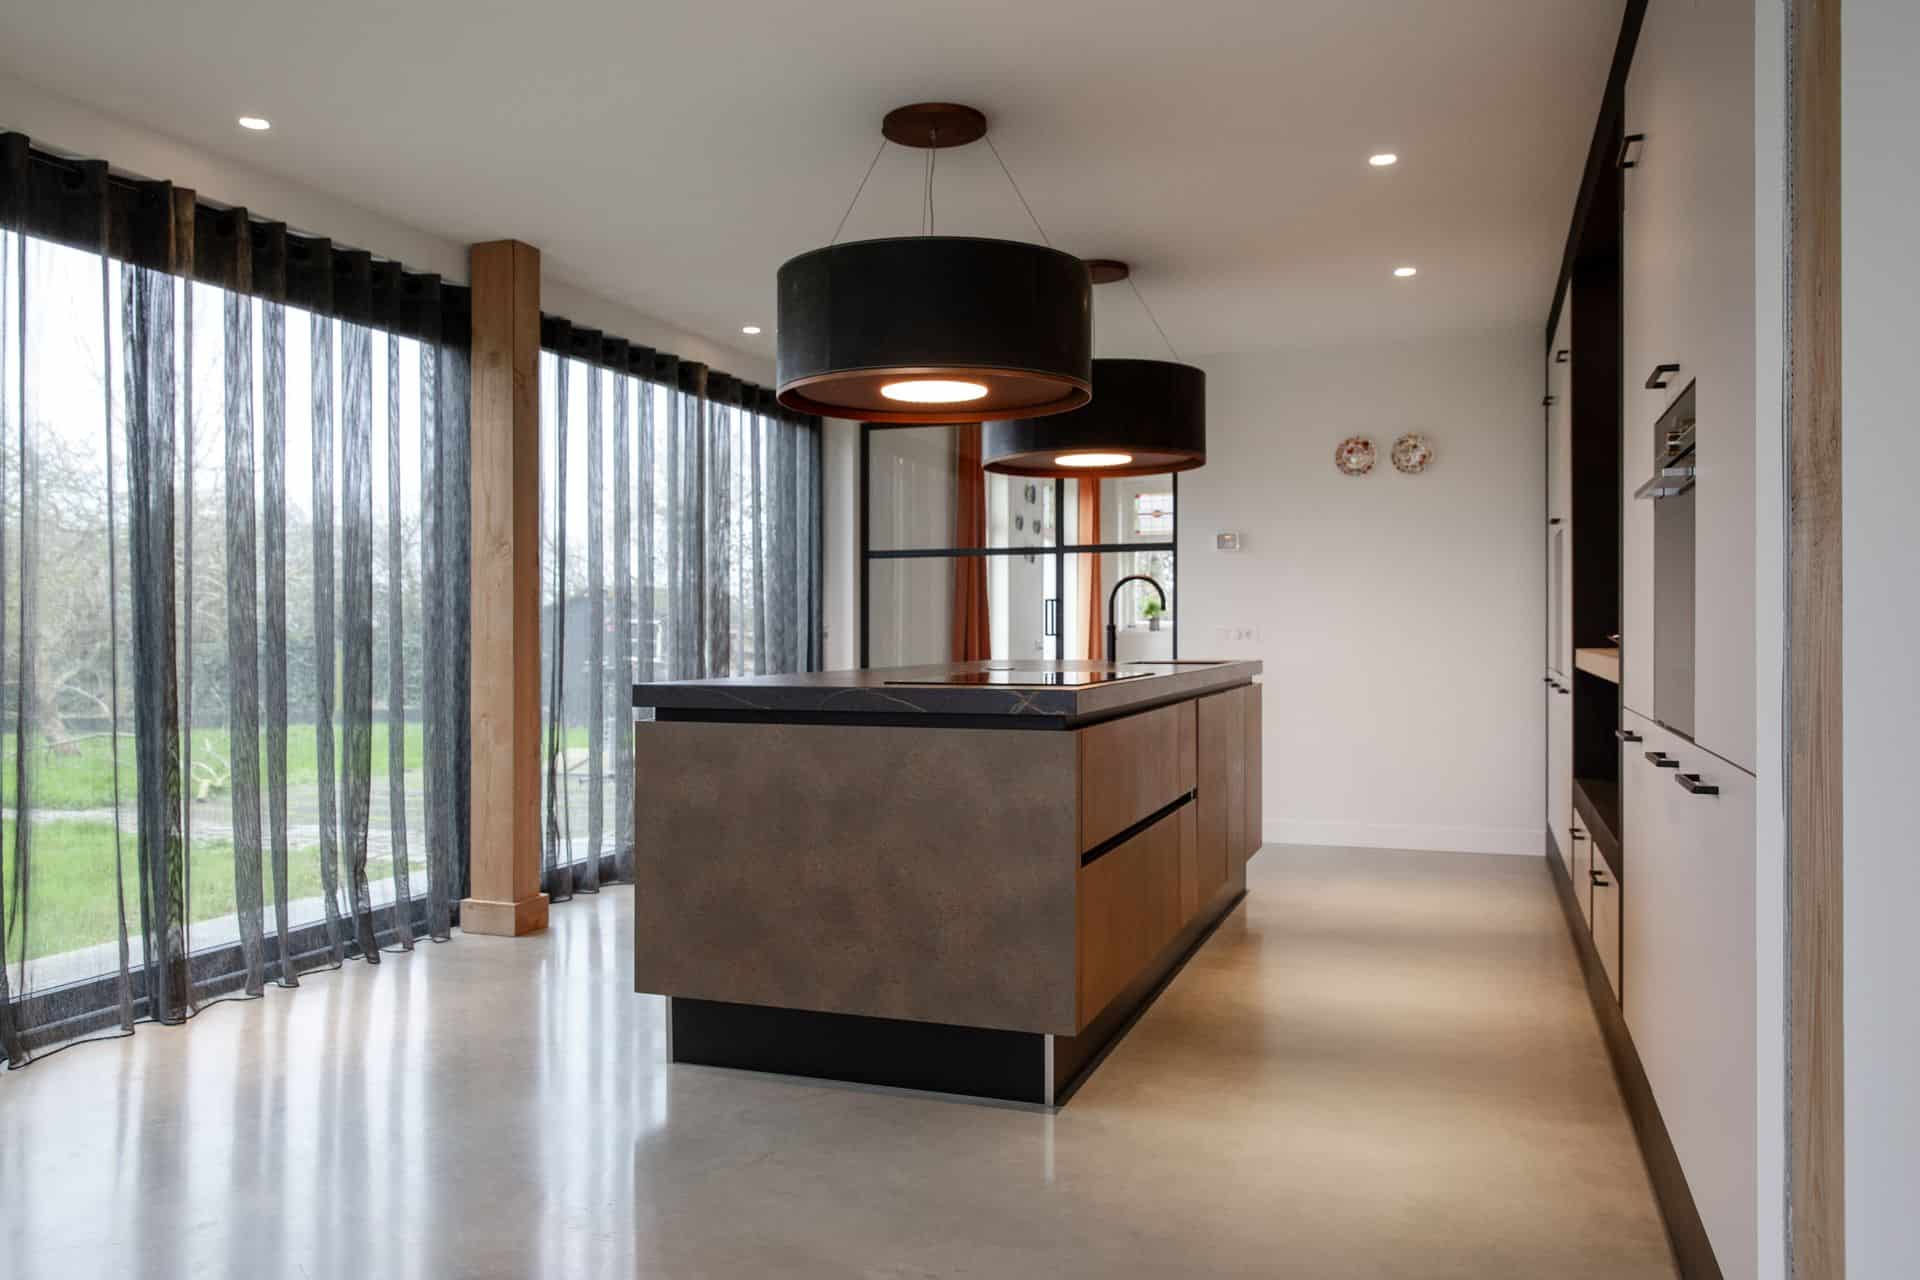 Gevlinderde woonbetonvloer in een moderne, industriële keuken